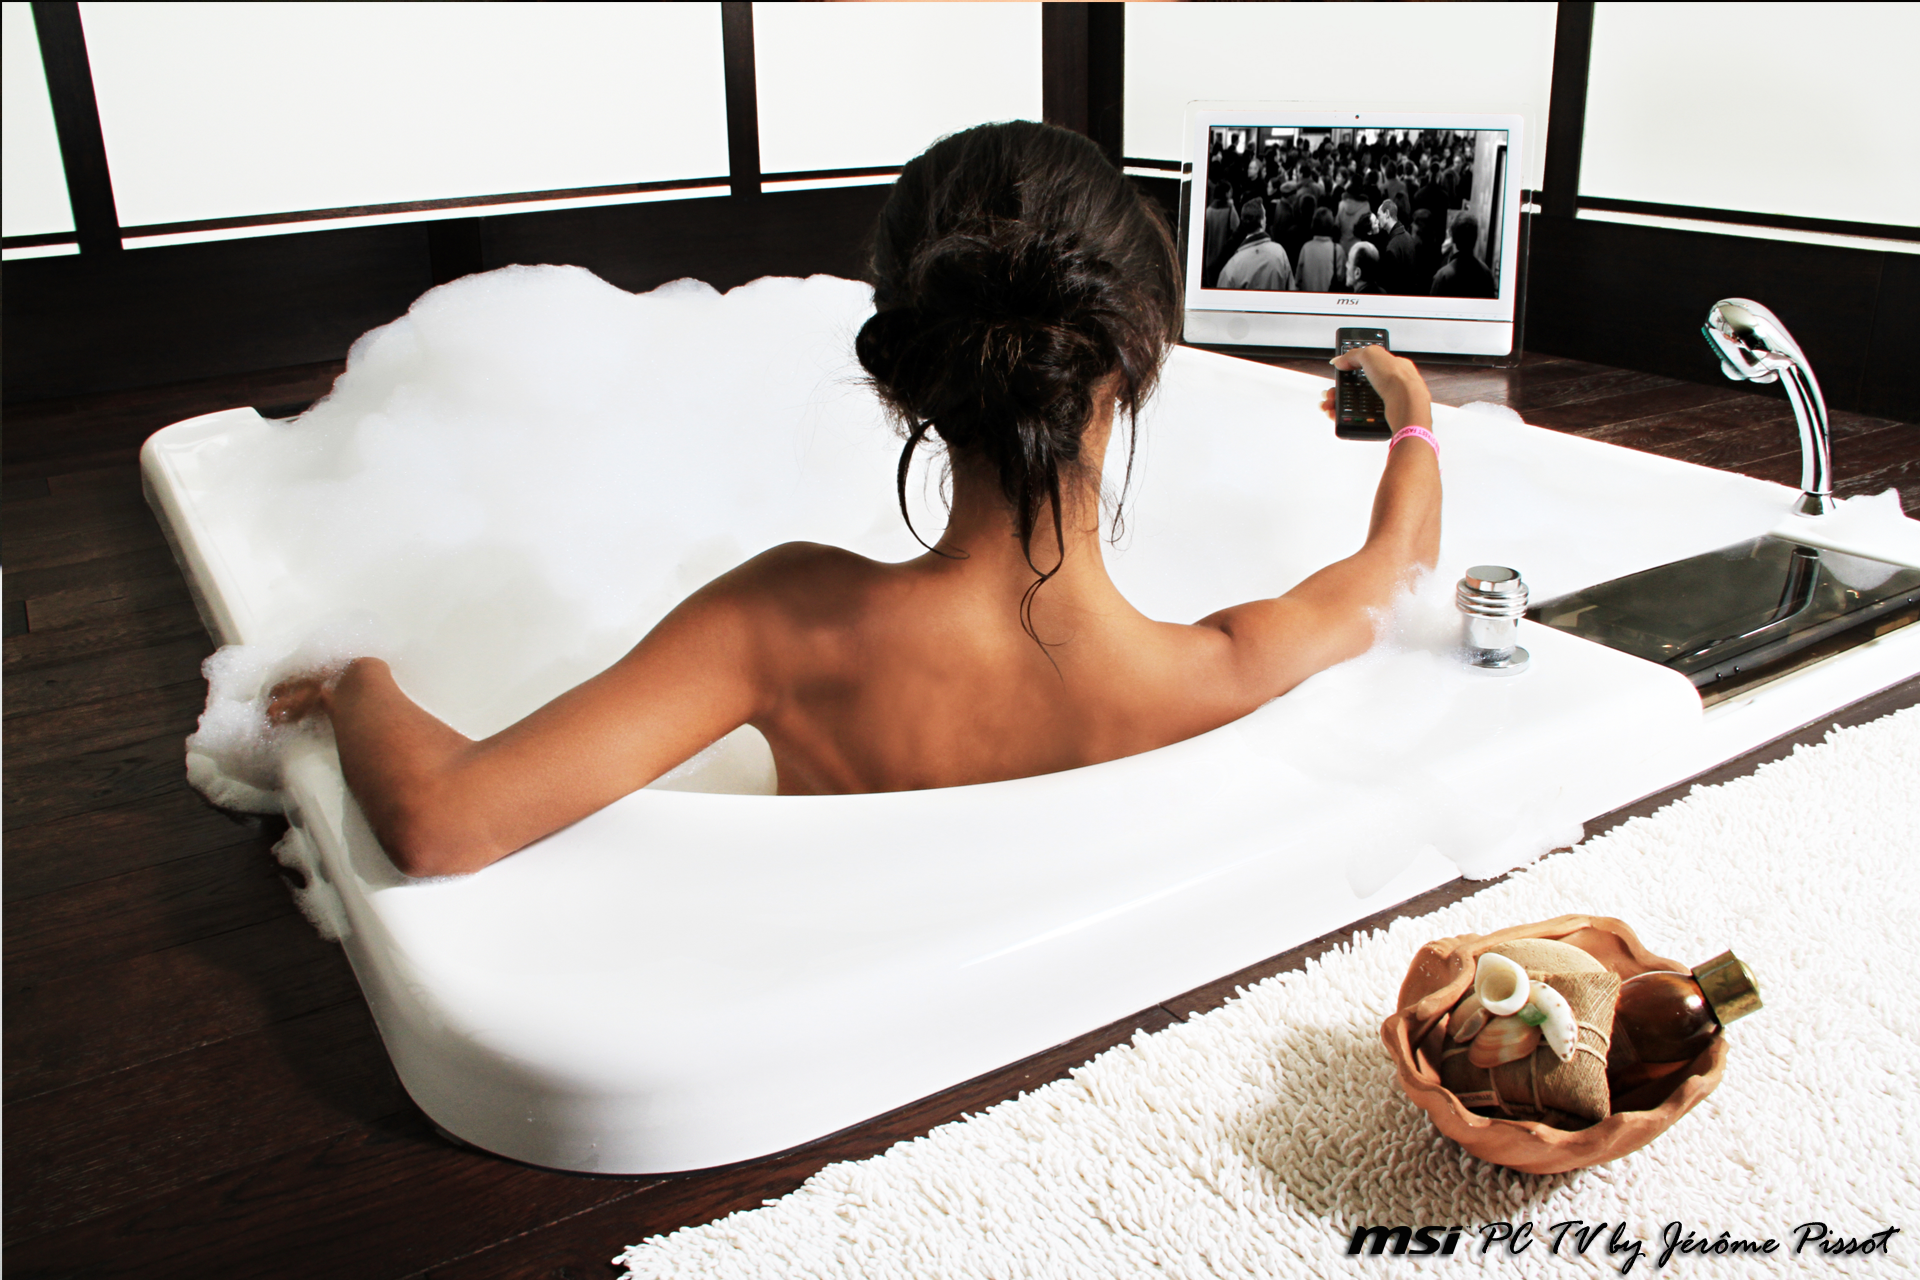 People 1920x1280 model women bathtub brunette back women indoors TV in bathtub indoors dark hair TV Remote